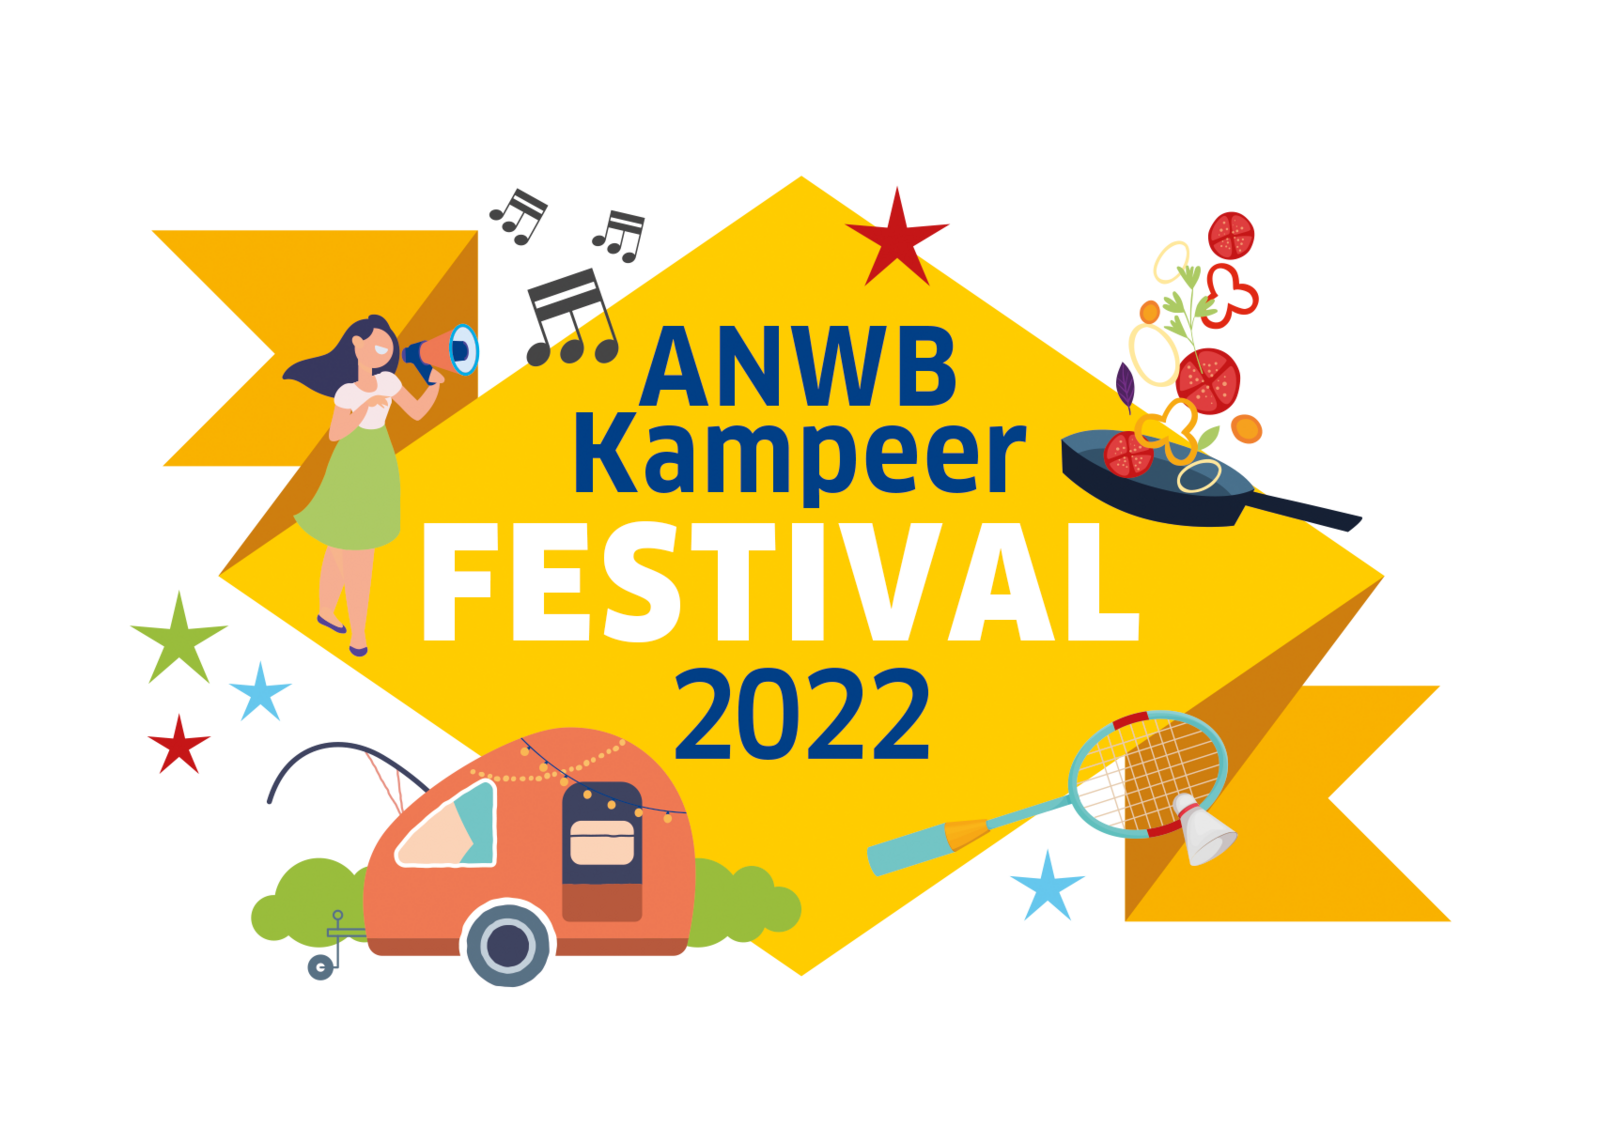 ANWB Kampeerfestival